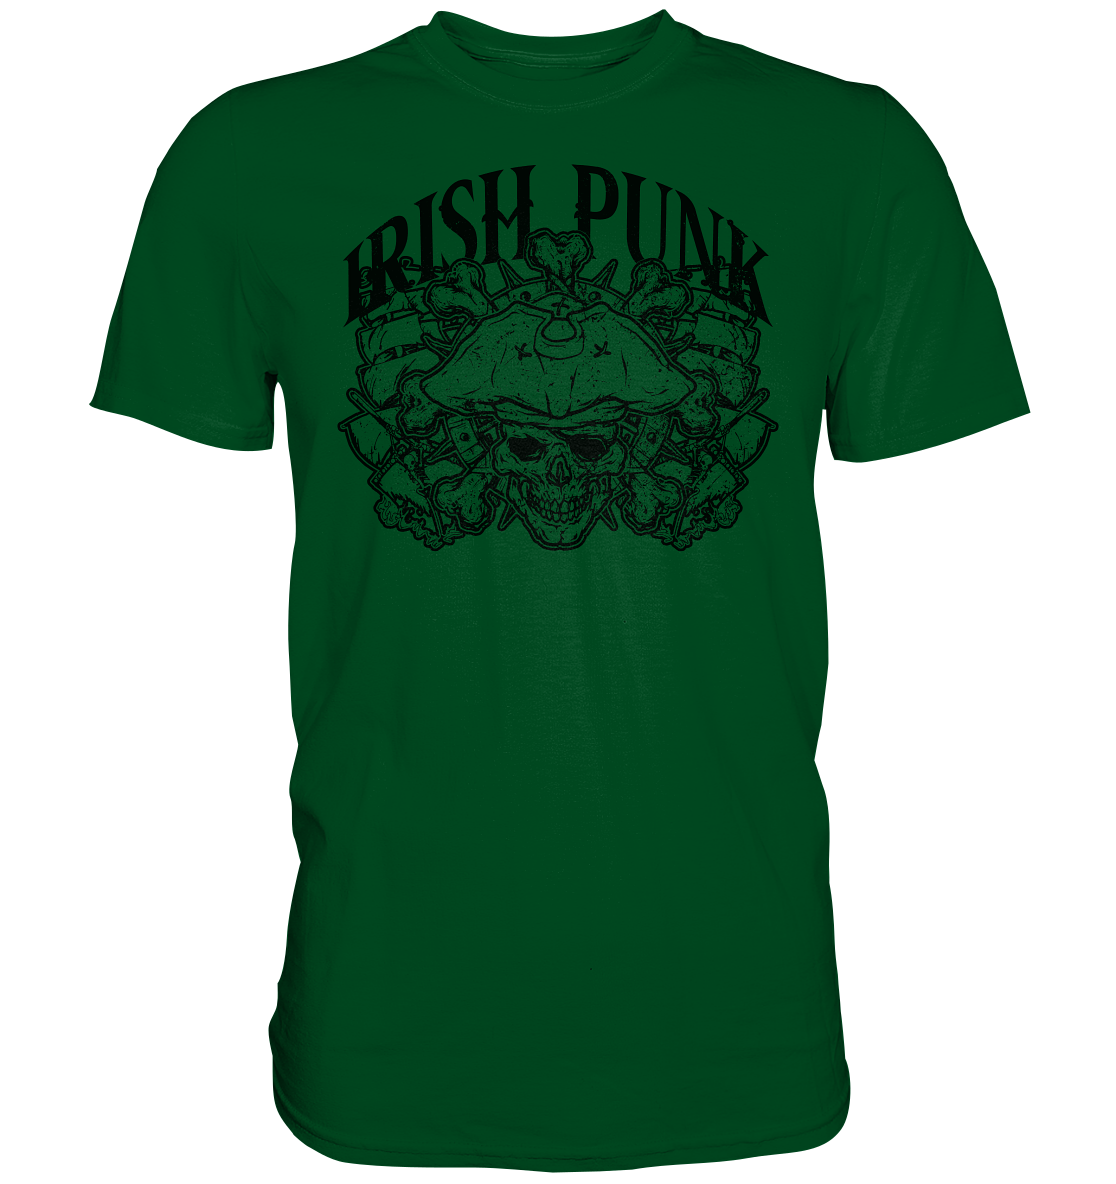 "Irish Punk" - Premium Shirt